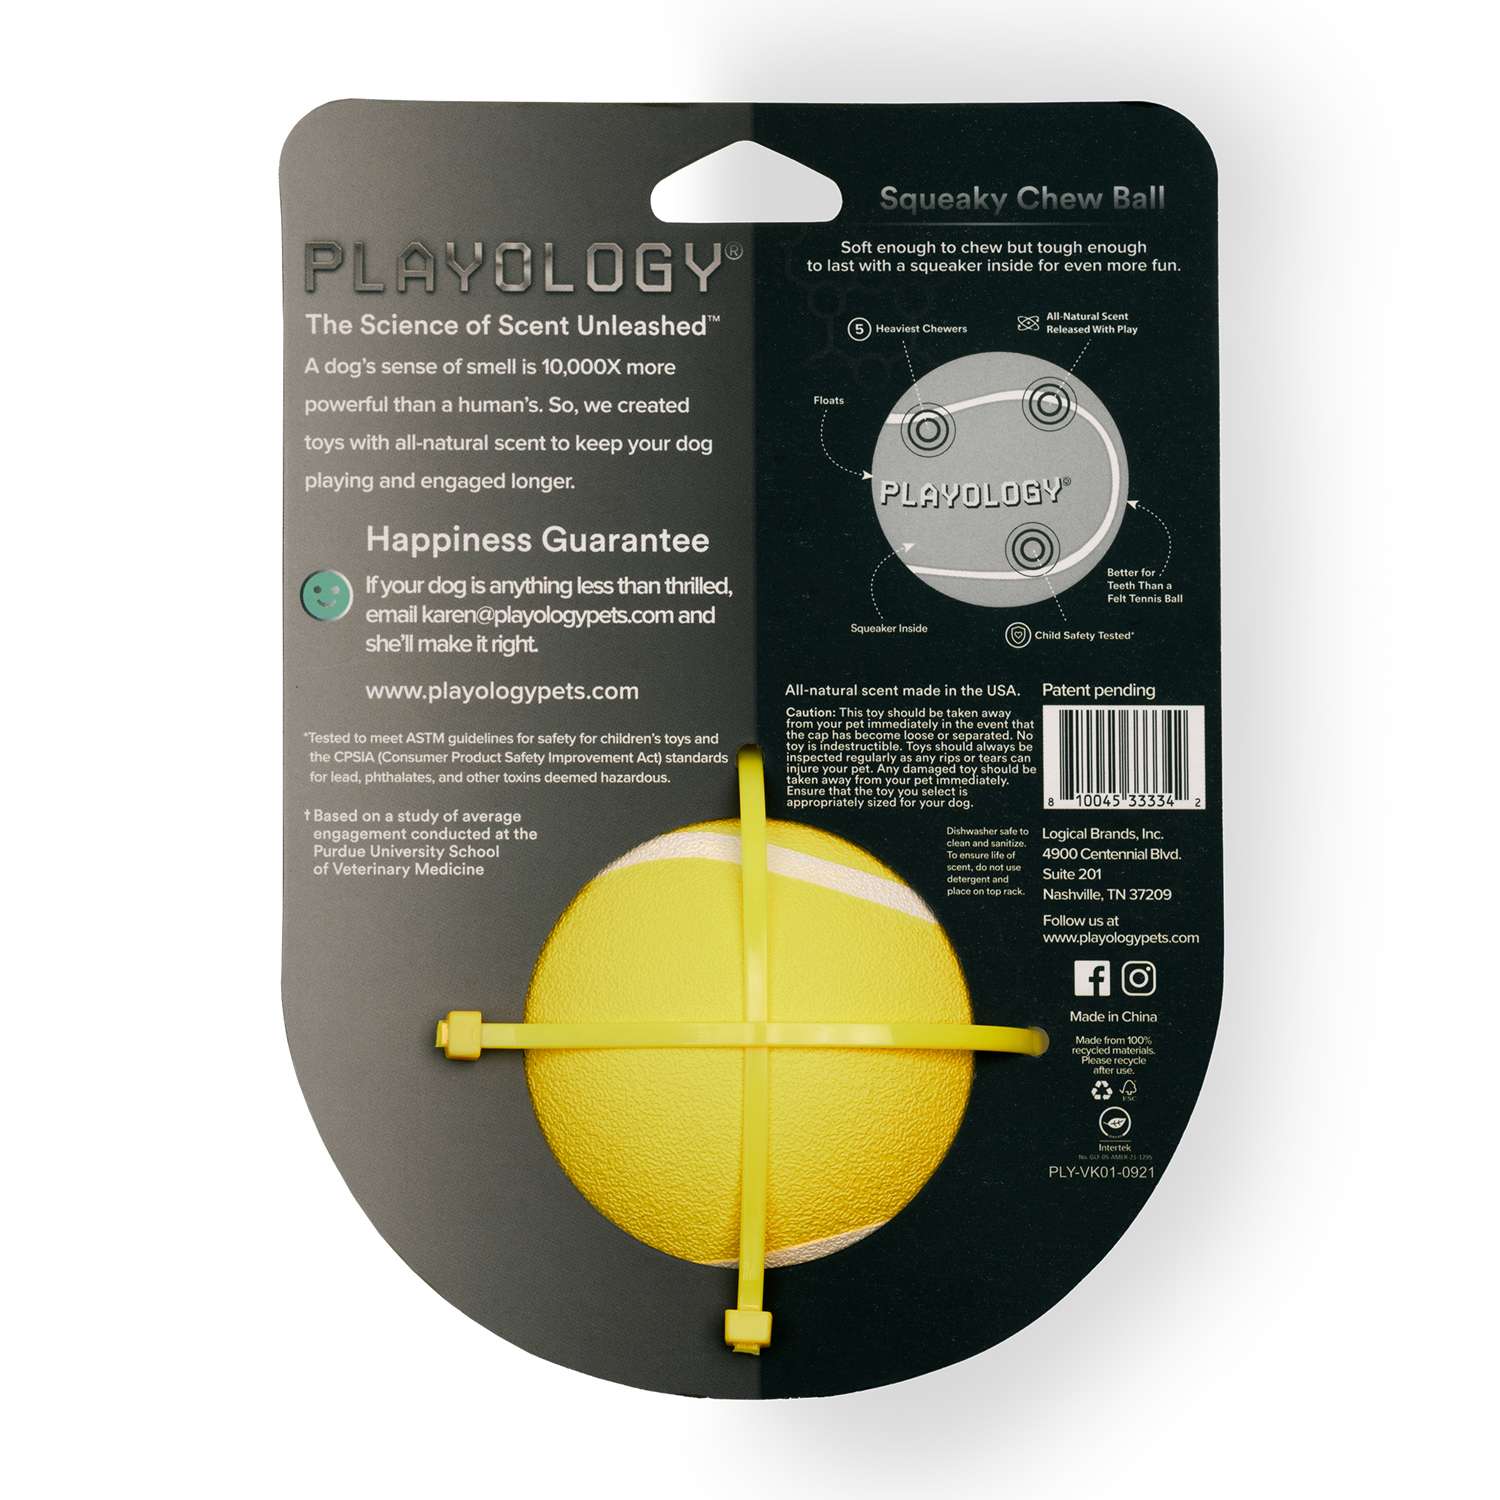 Жевательный мяч Playology SQUEAKY CHEW BALL 8 см для собак средних и крупных пород с пищалкой и с ароматом курицы, цвет желтый